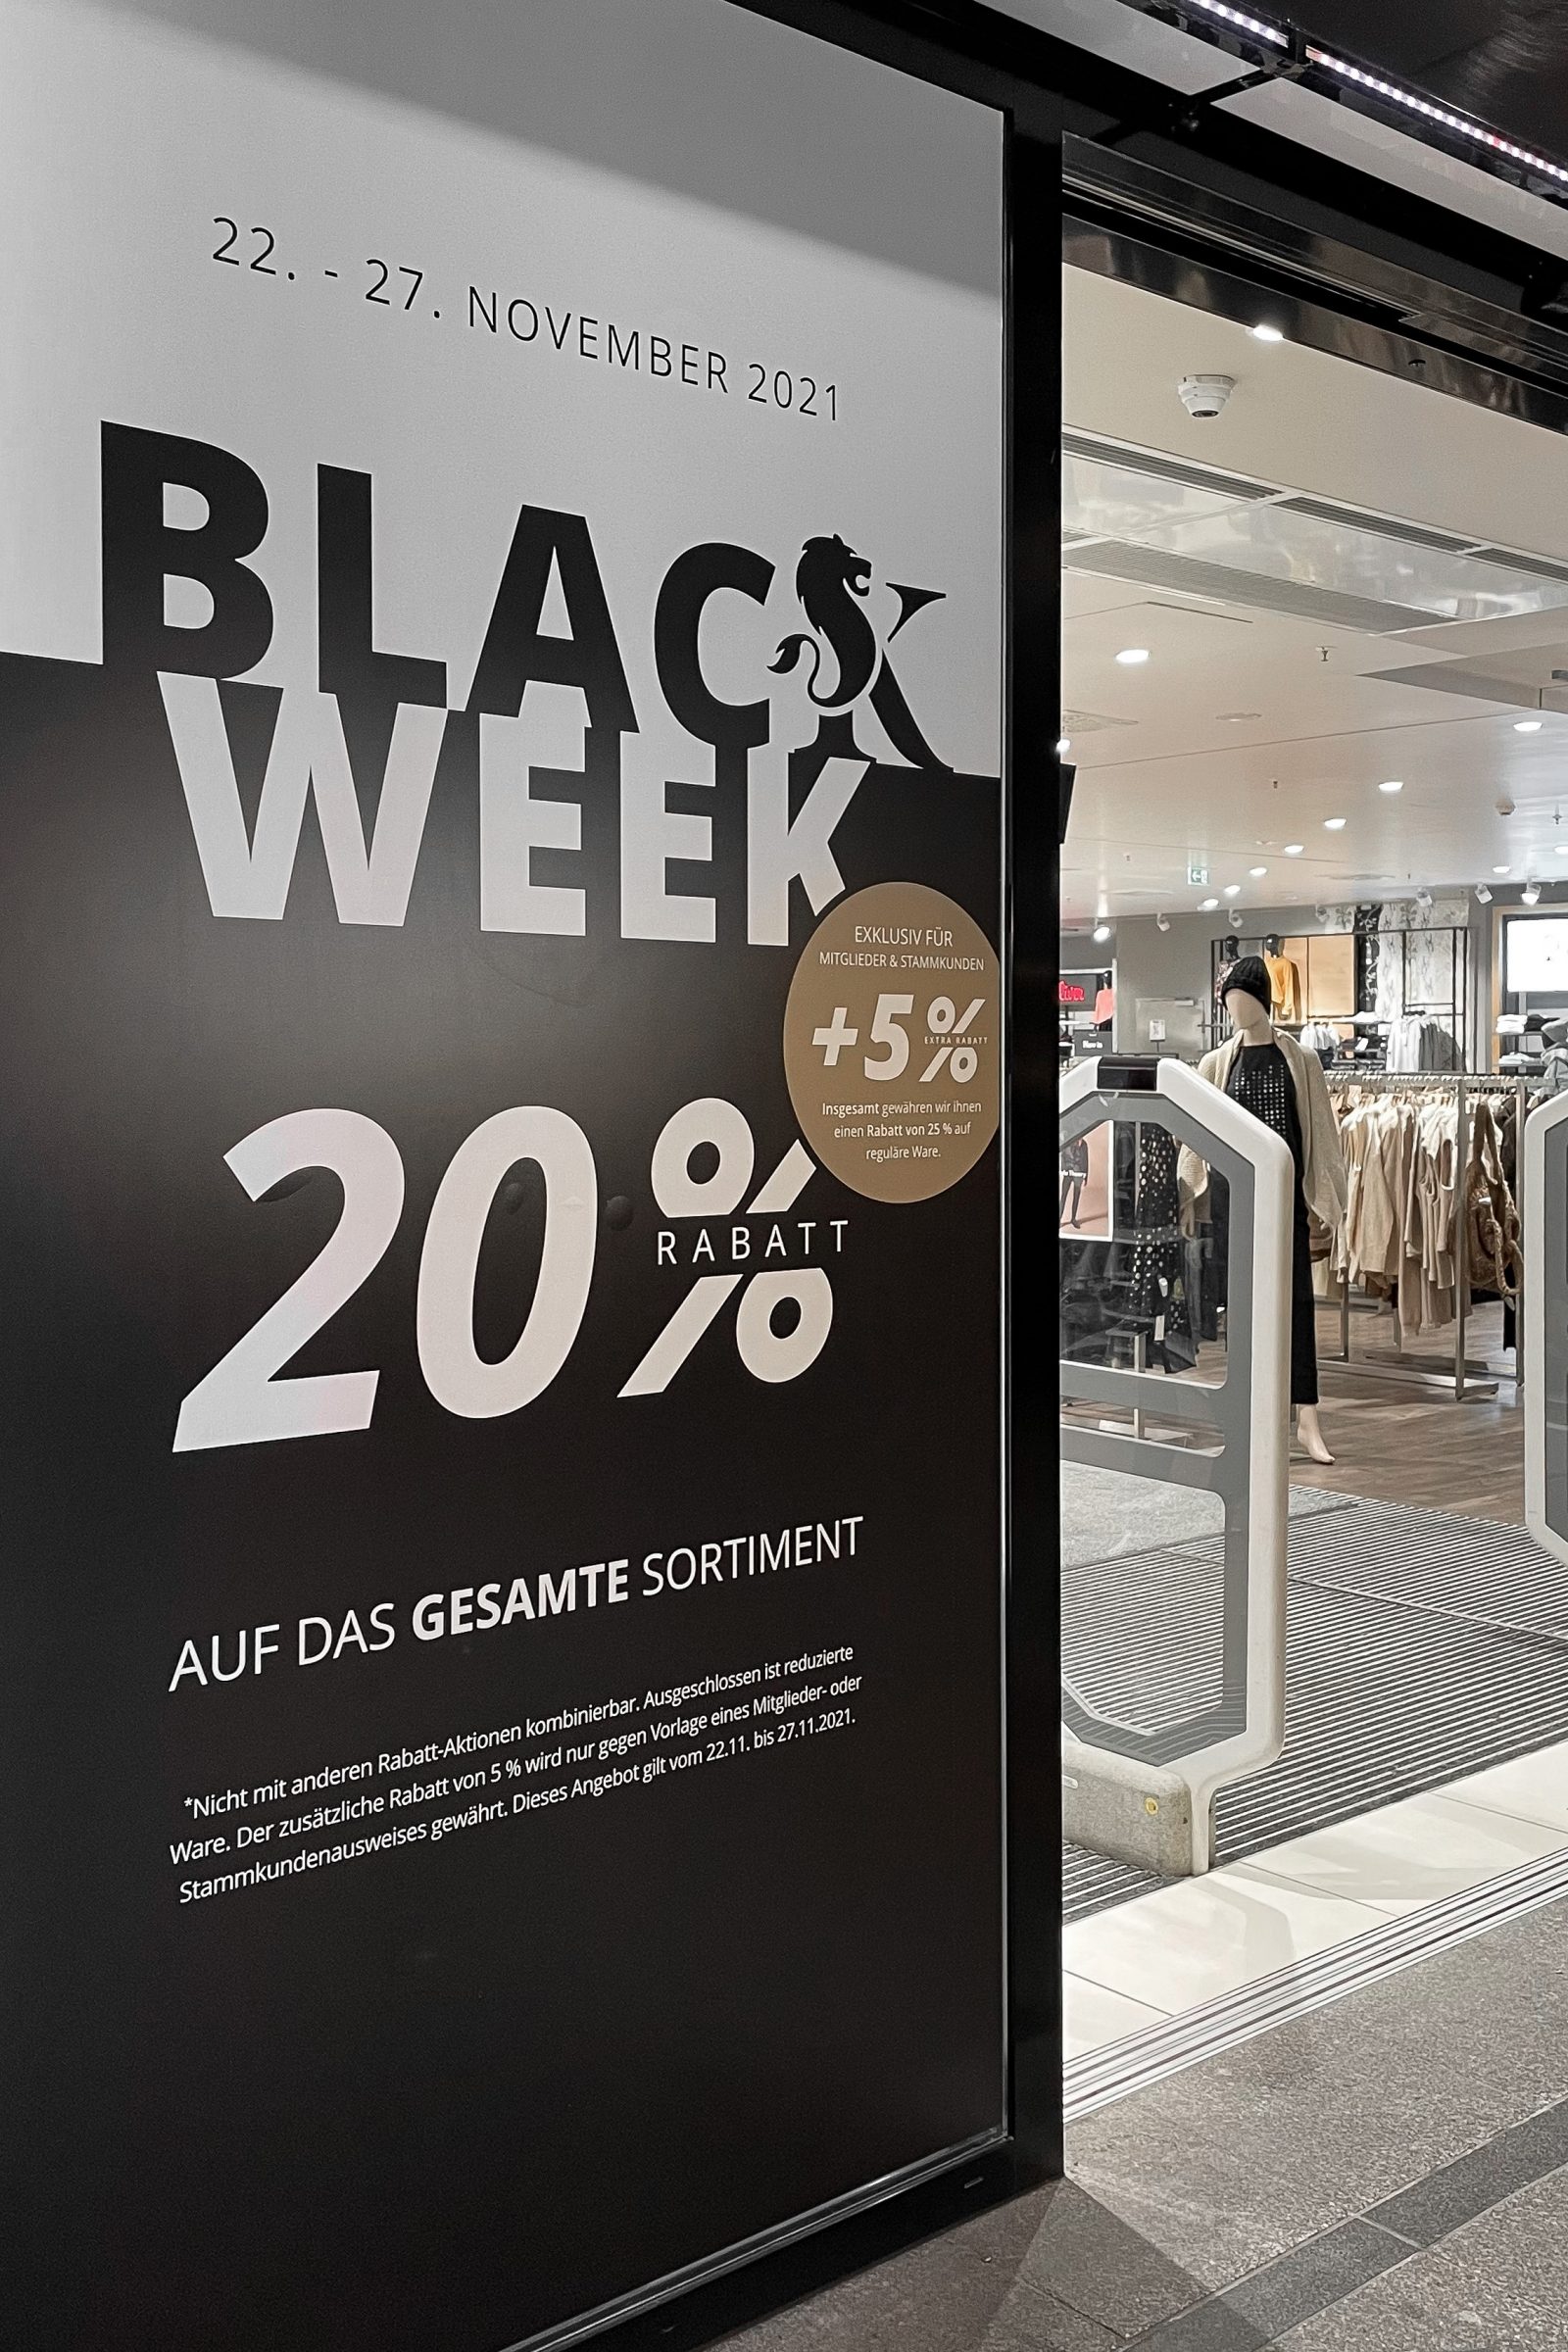 Konsum Weimar - Black Week Marketing